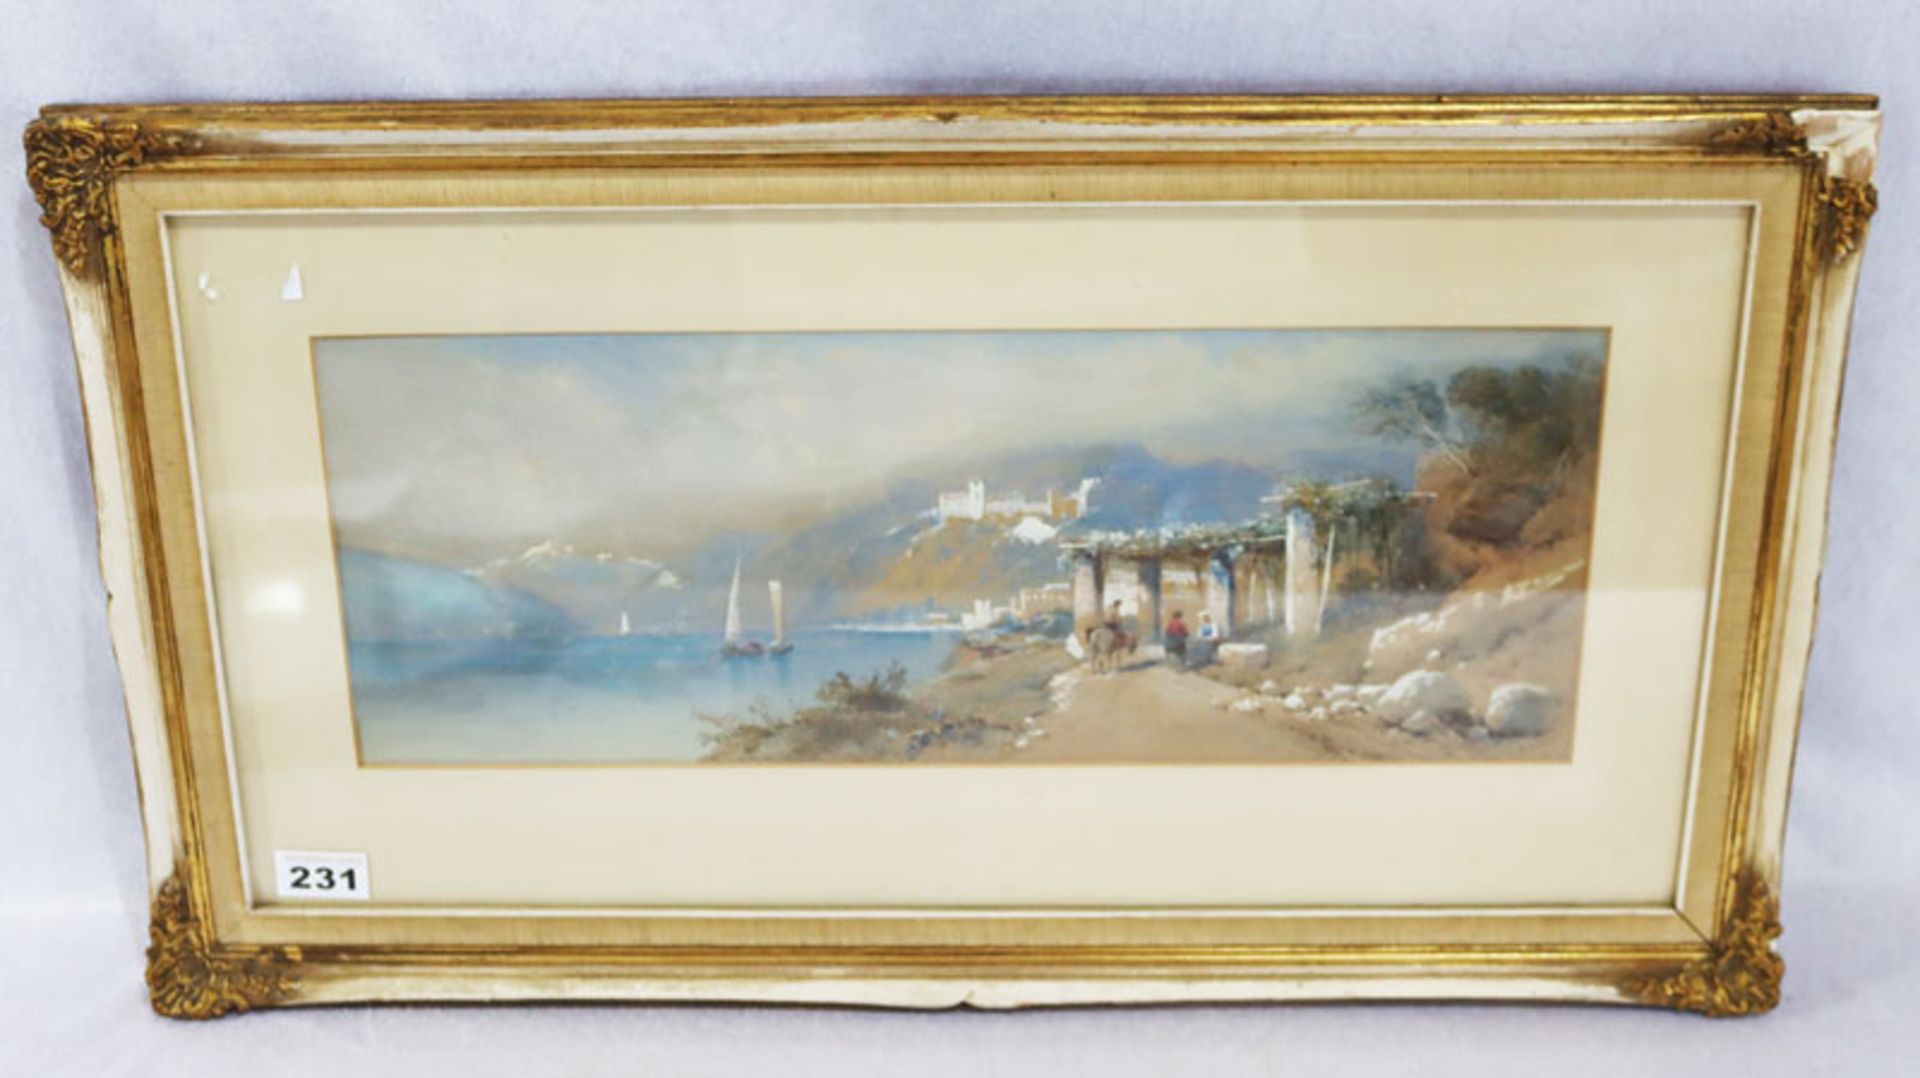 Aquarell 'Südländische Szenerie', signiert L Rowbotham, Thomas Charles Leeson, * 1823 + 1875, mit